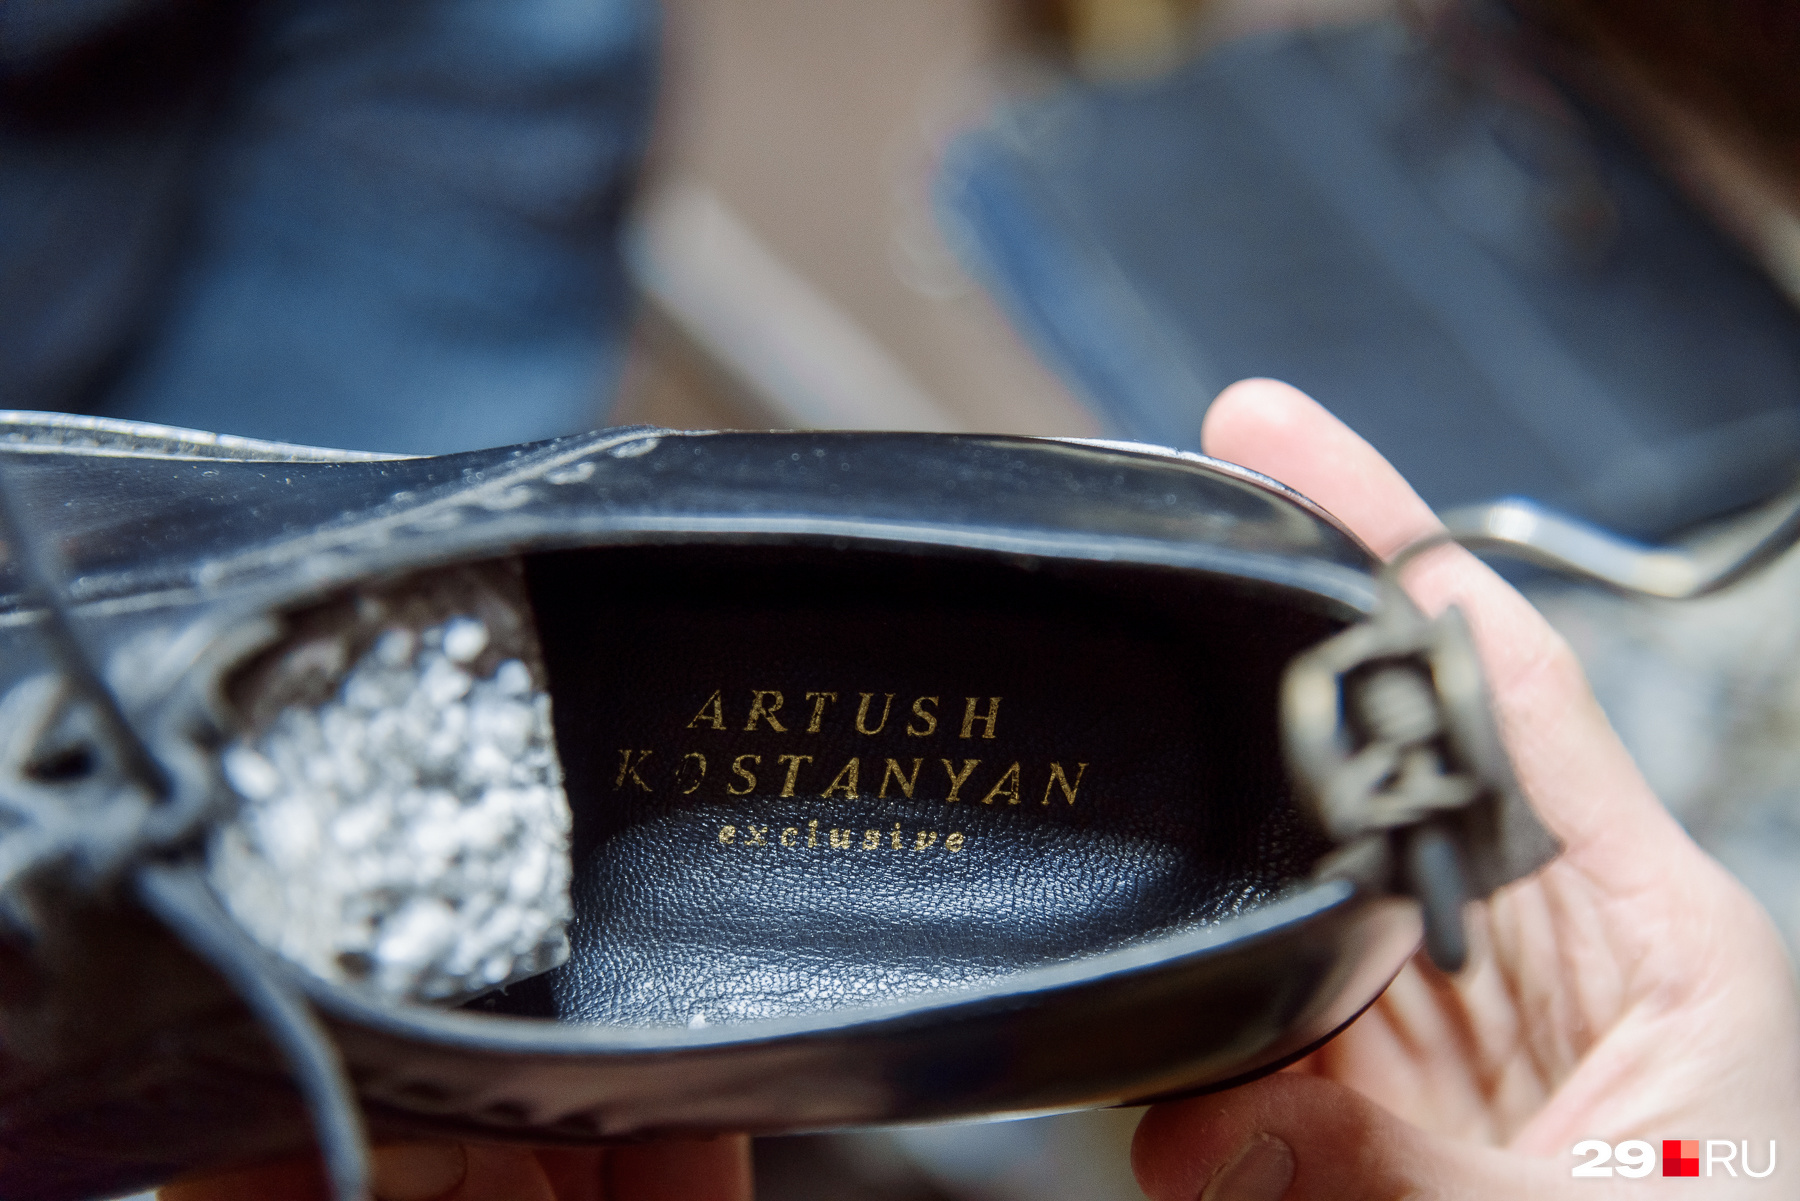 На обуви, которую лично делает Артуш Костанян, проставлено его имя